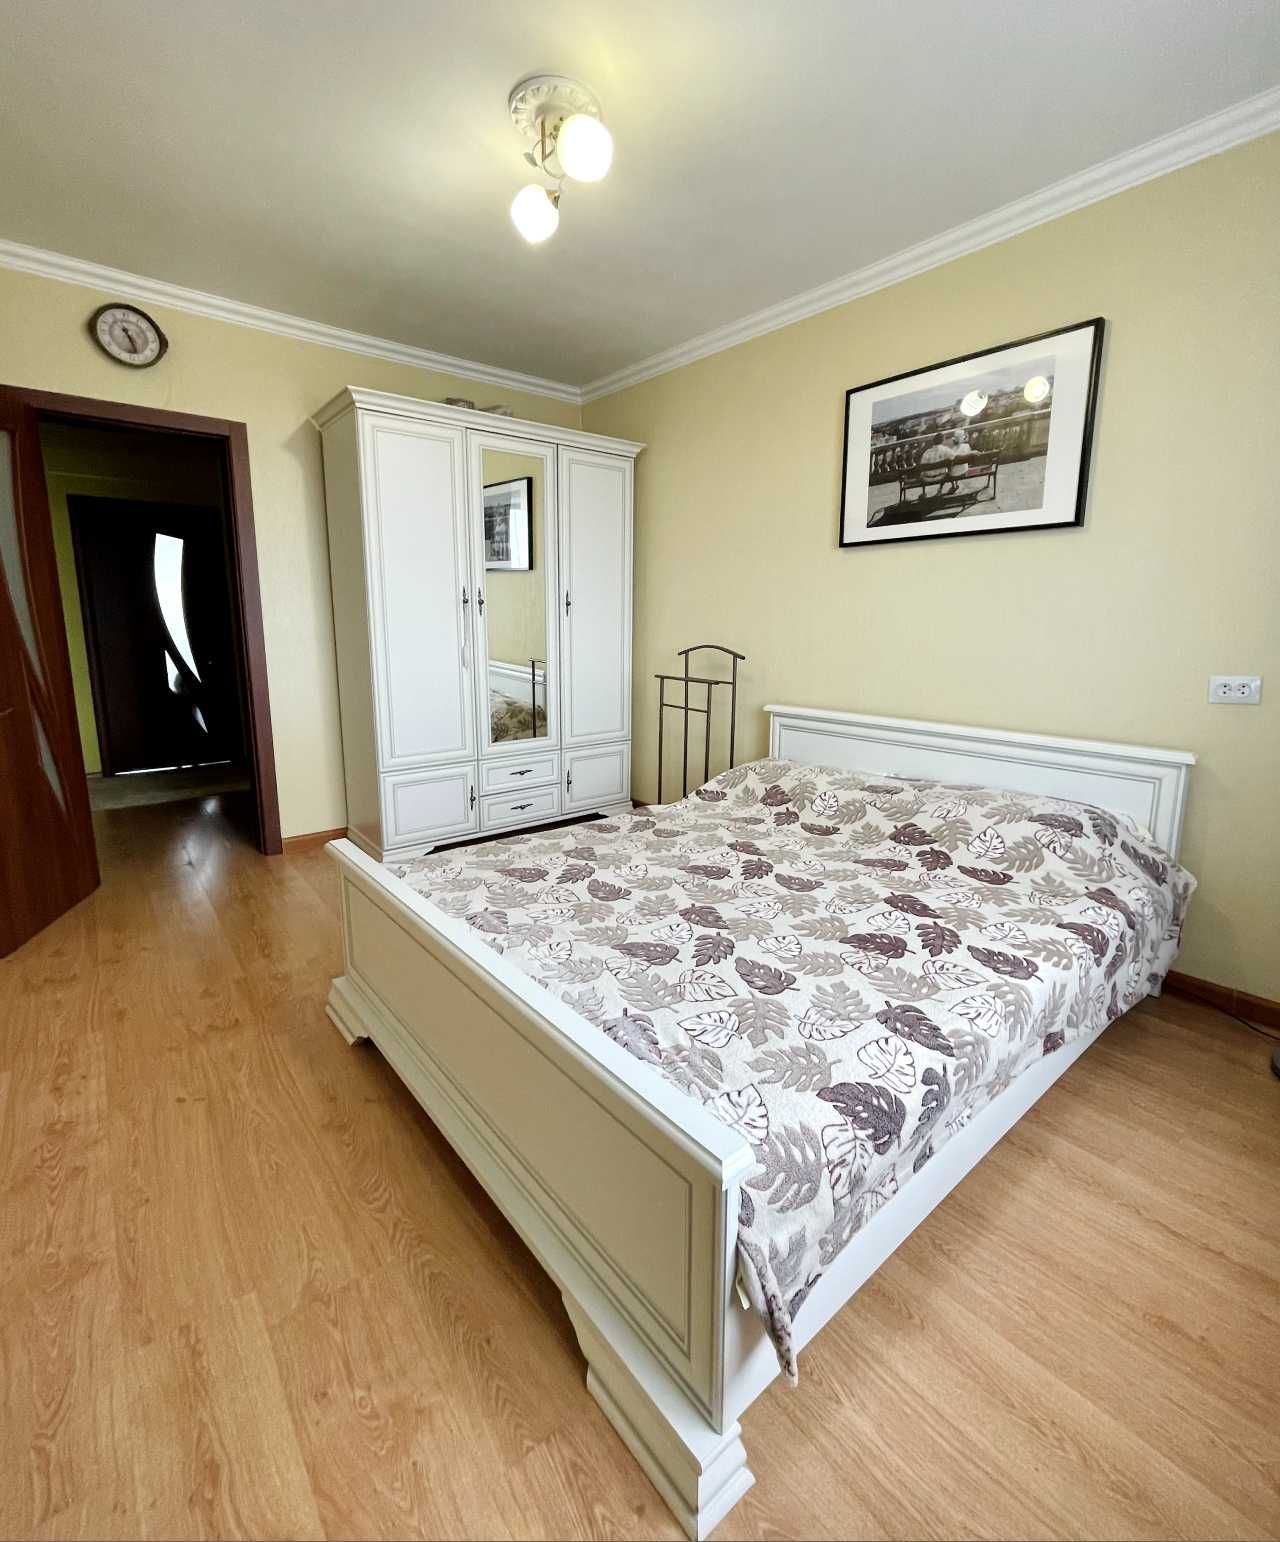 Продам уютную 3-х комнатную квартиру в Экибастуза (8 мкр)